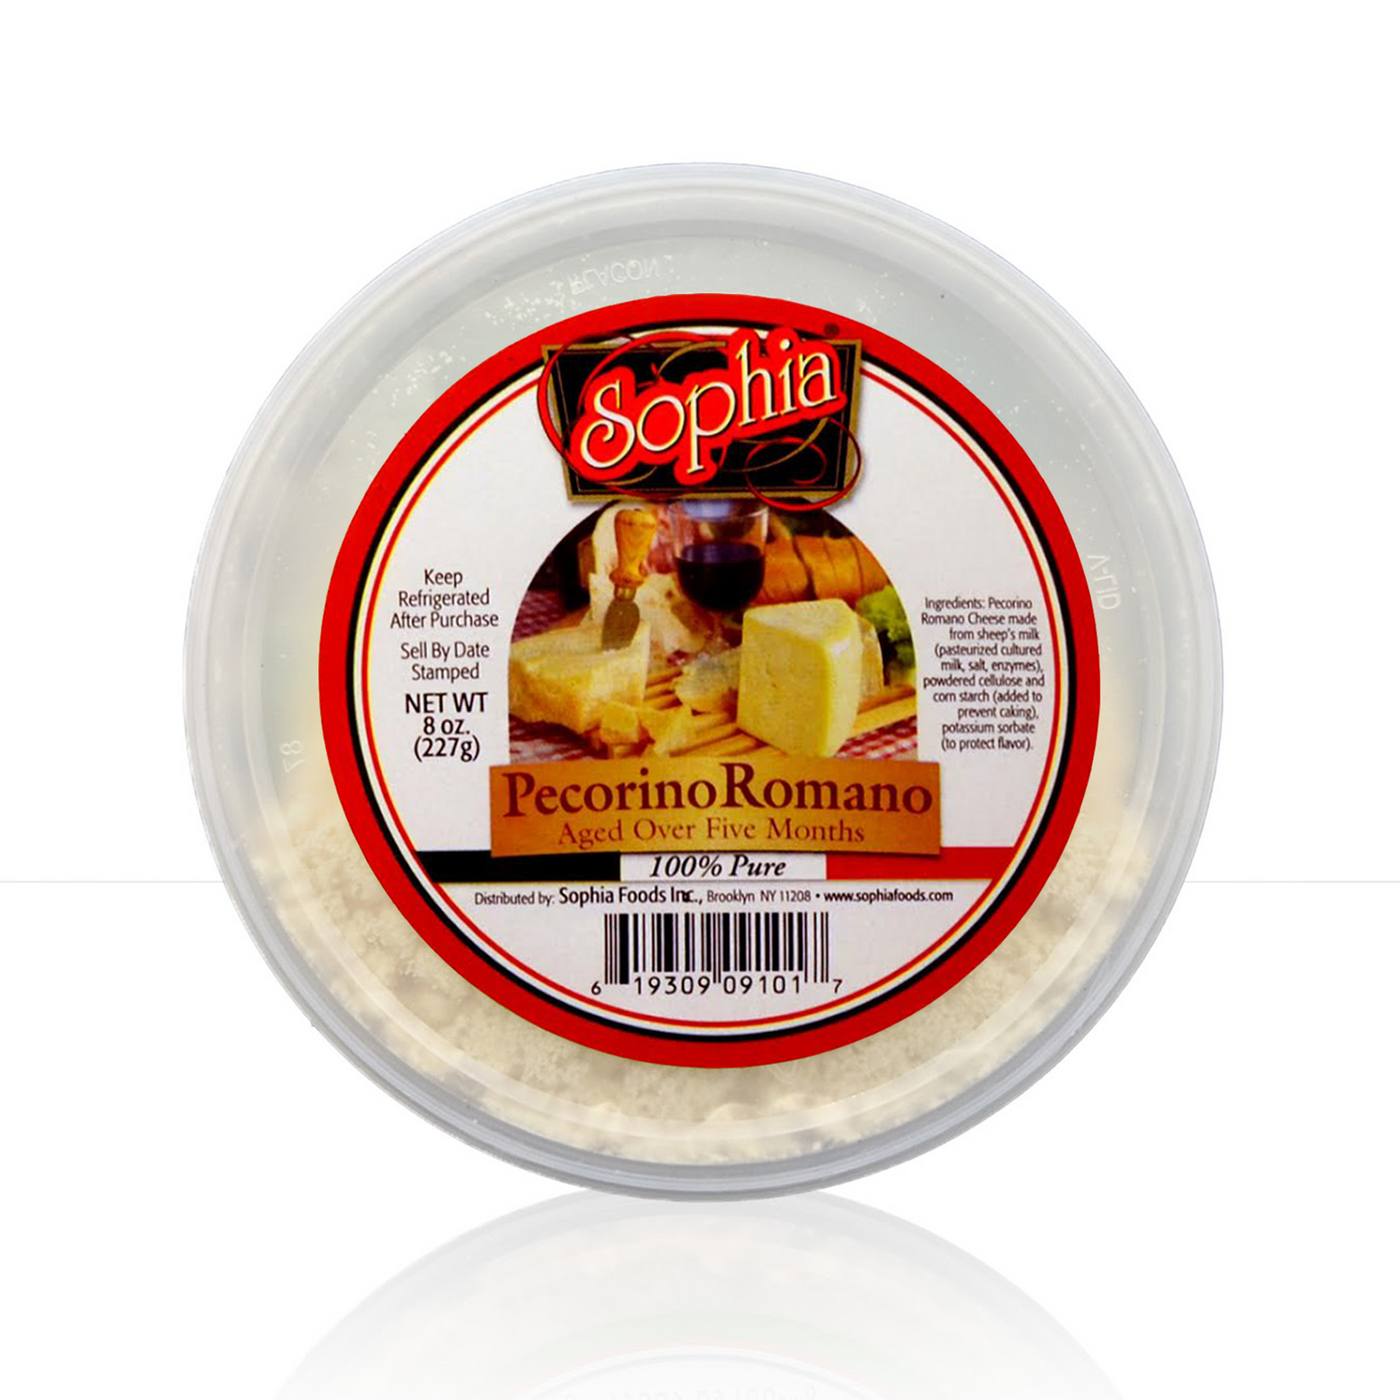 Sophia Cheese Product Deli Cup - Pecorino Romano